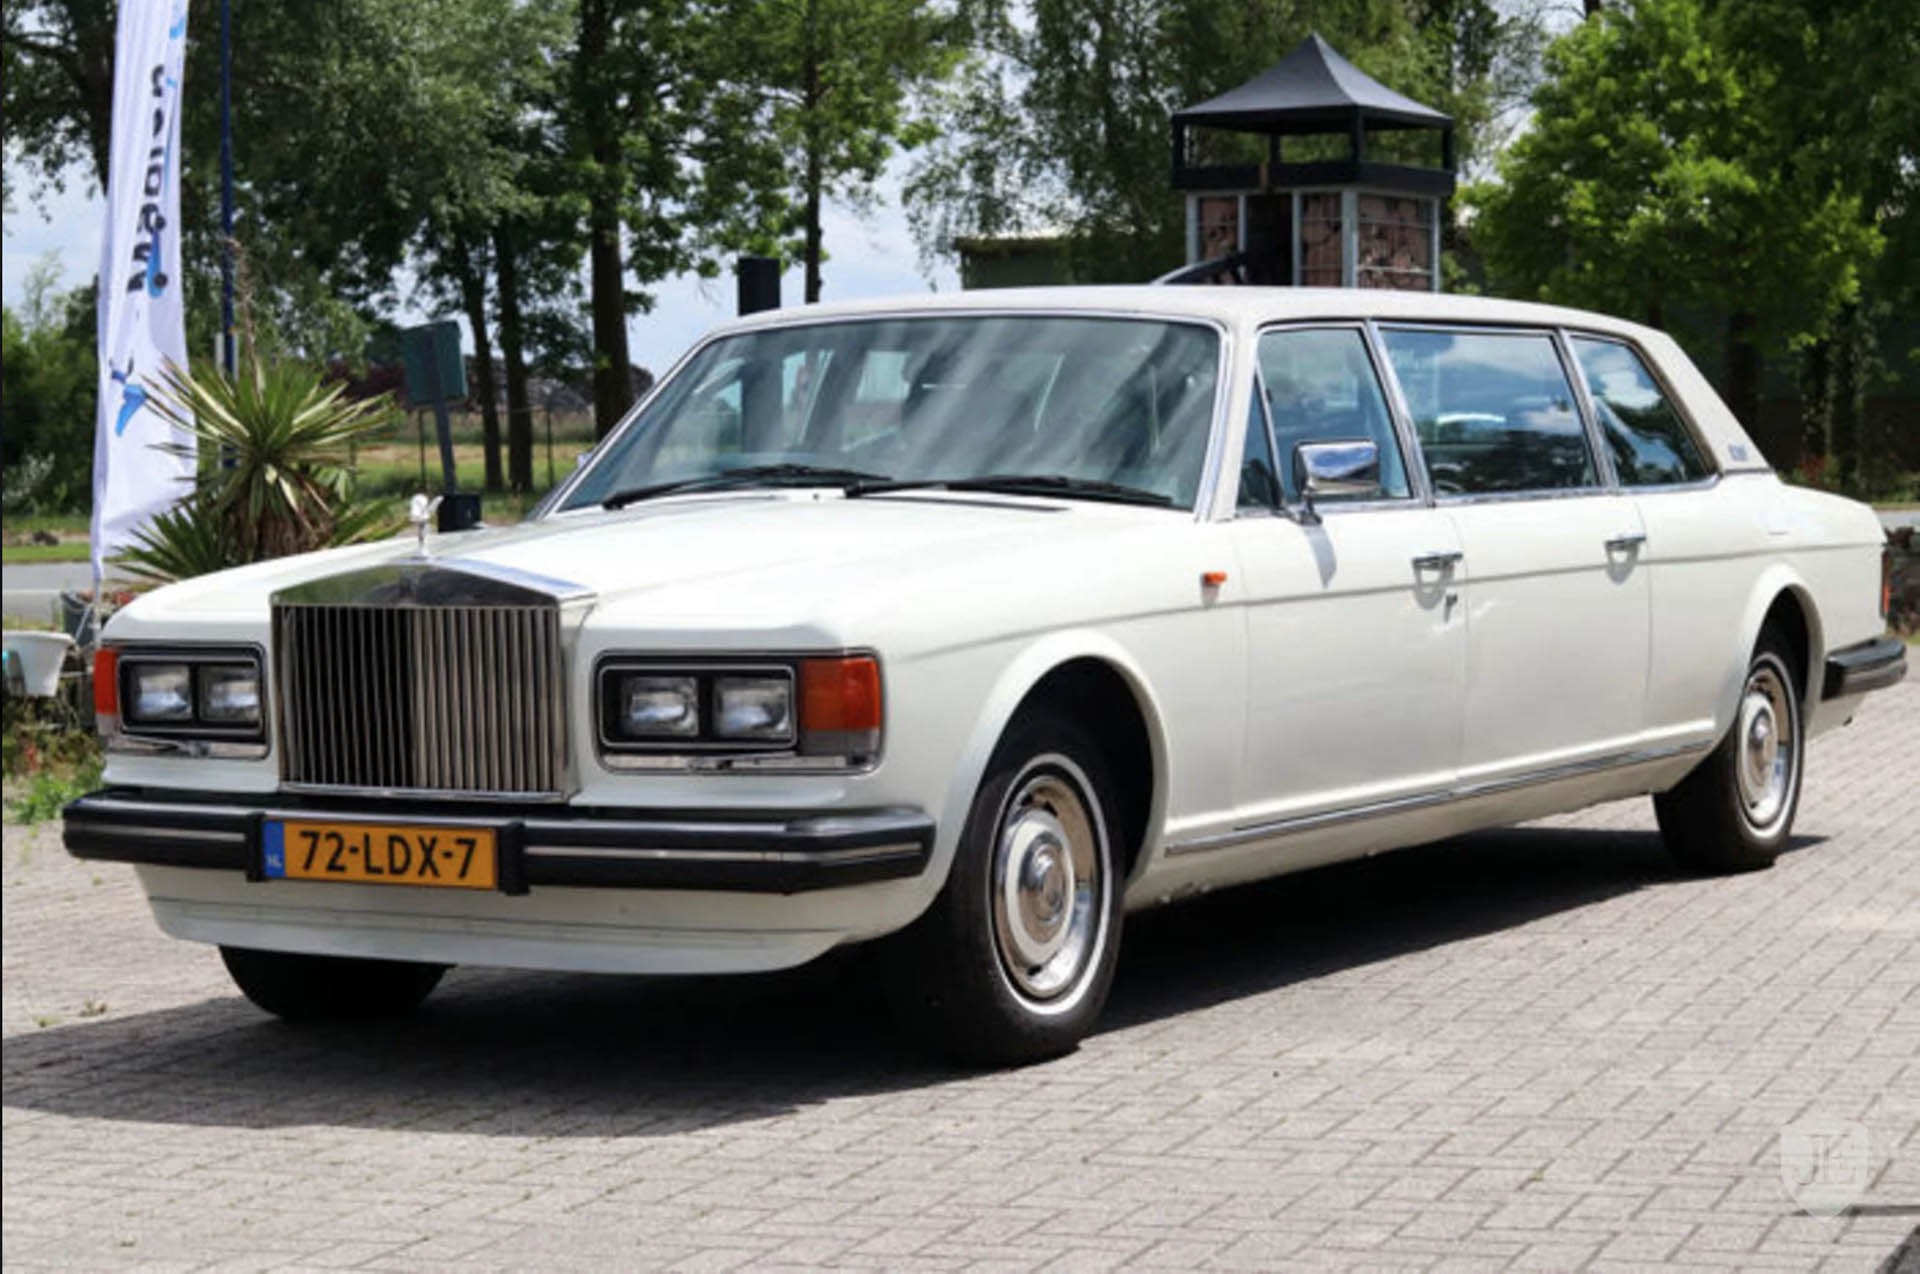 Rolls Royce Phantom cũ giá 8 tỷ nộp thuế hơn 154 tỷ đồng